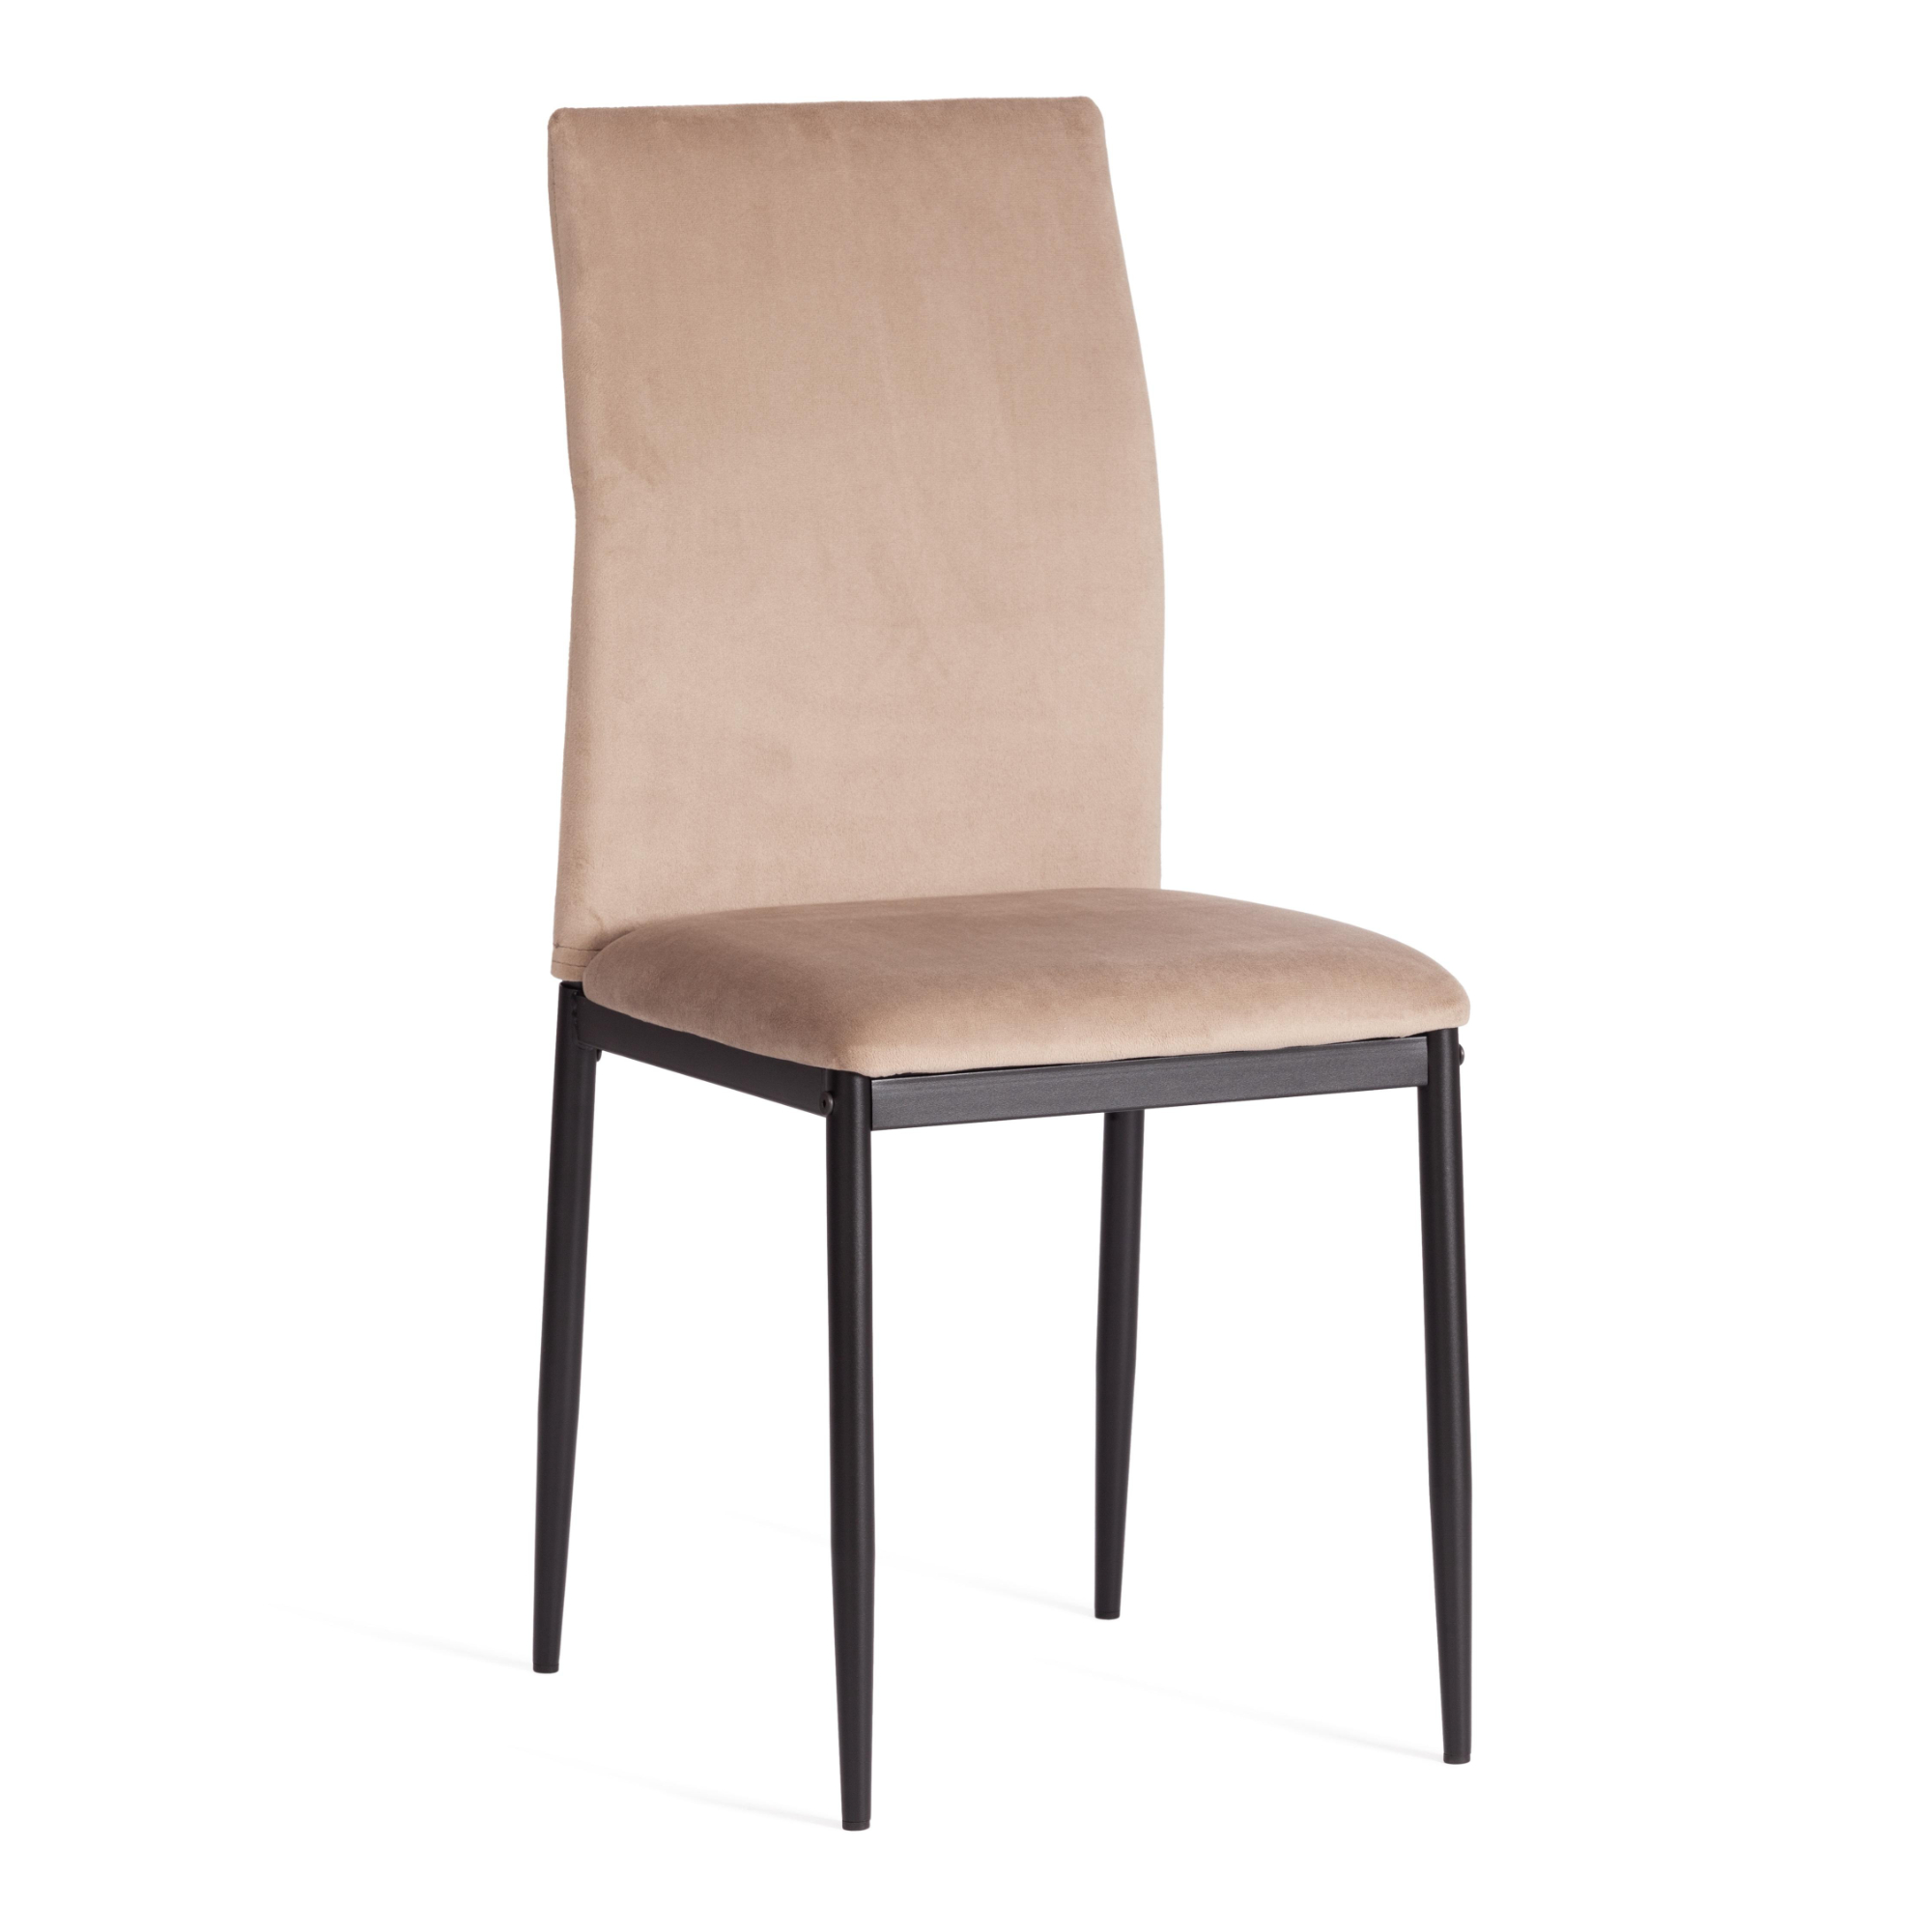 Стул ТС Capri бежевый вельвет 49,5х41х93,5 см роскошный стул nordic светильник для макияжа домашний круглый стул для спальни туалетный стул сетчатый красный стул для макияжа милый табур